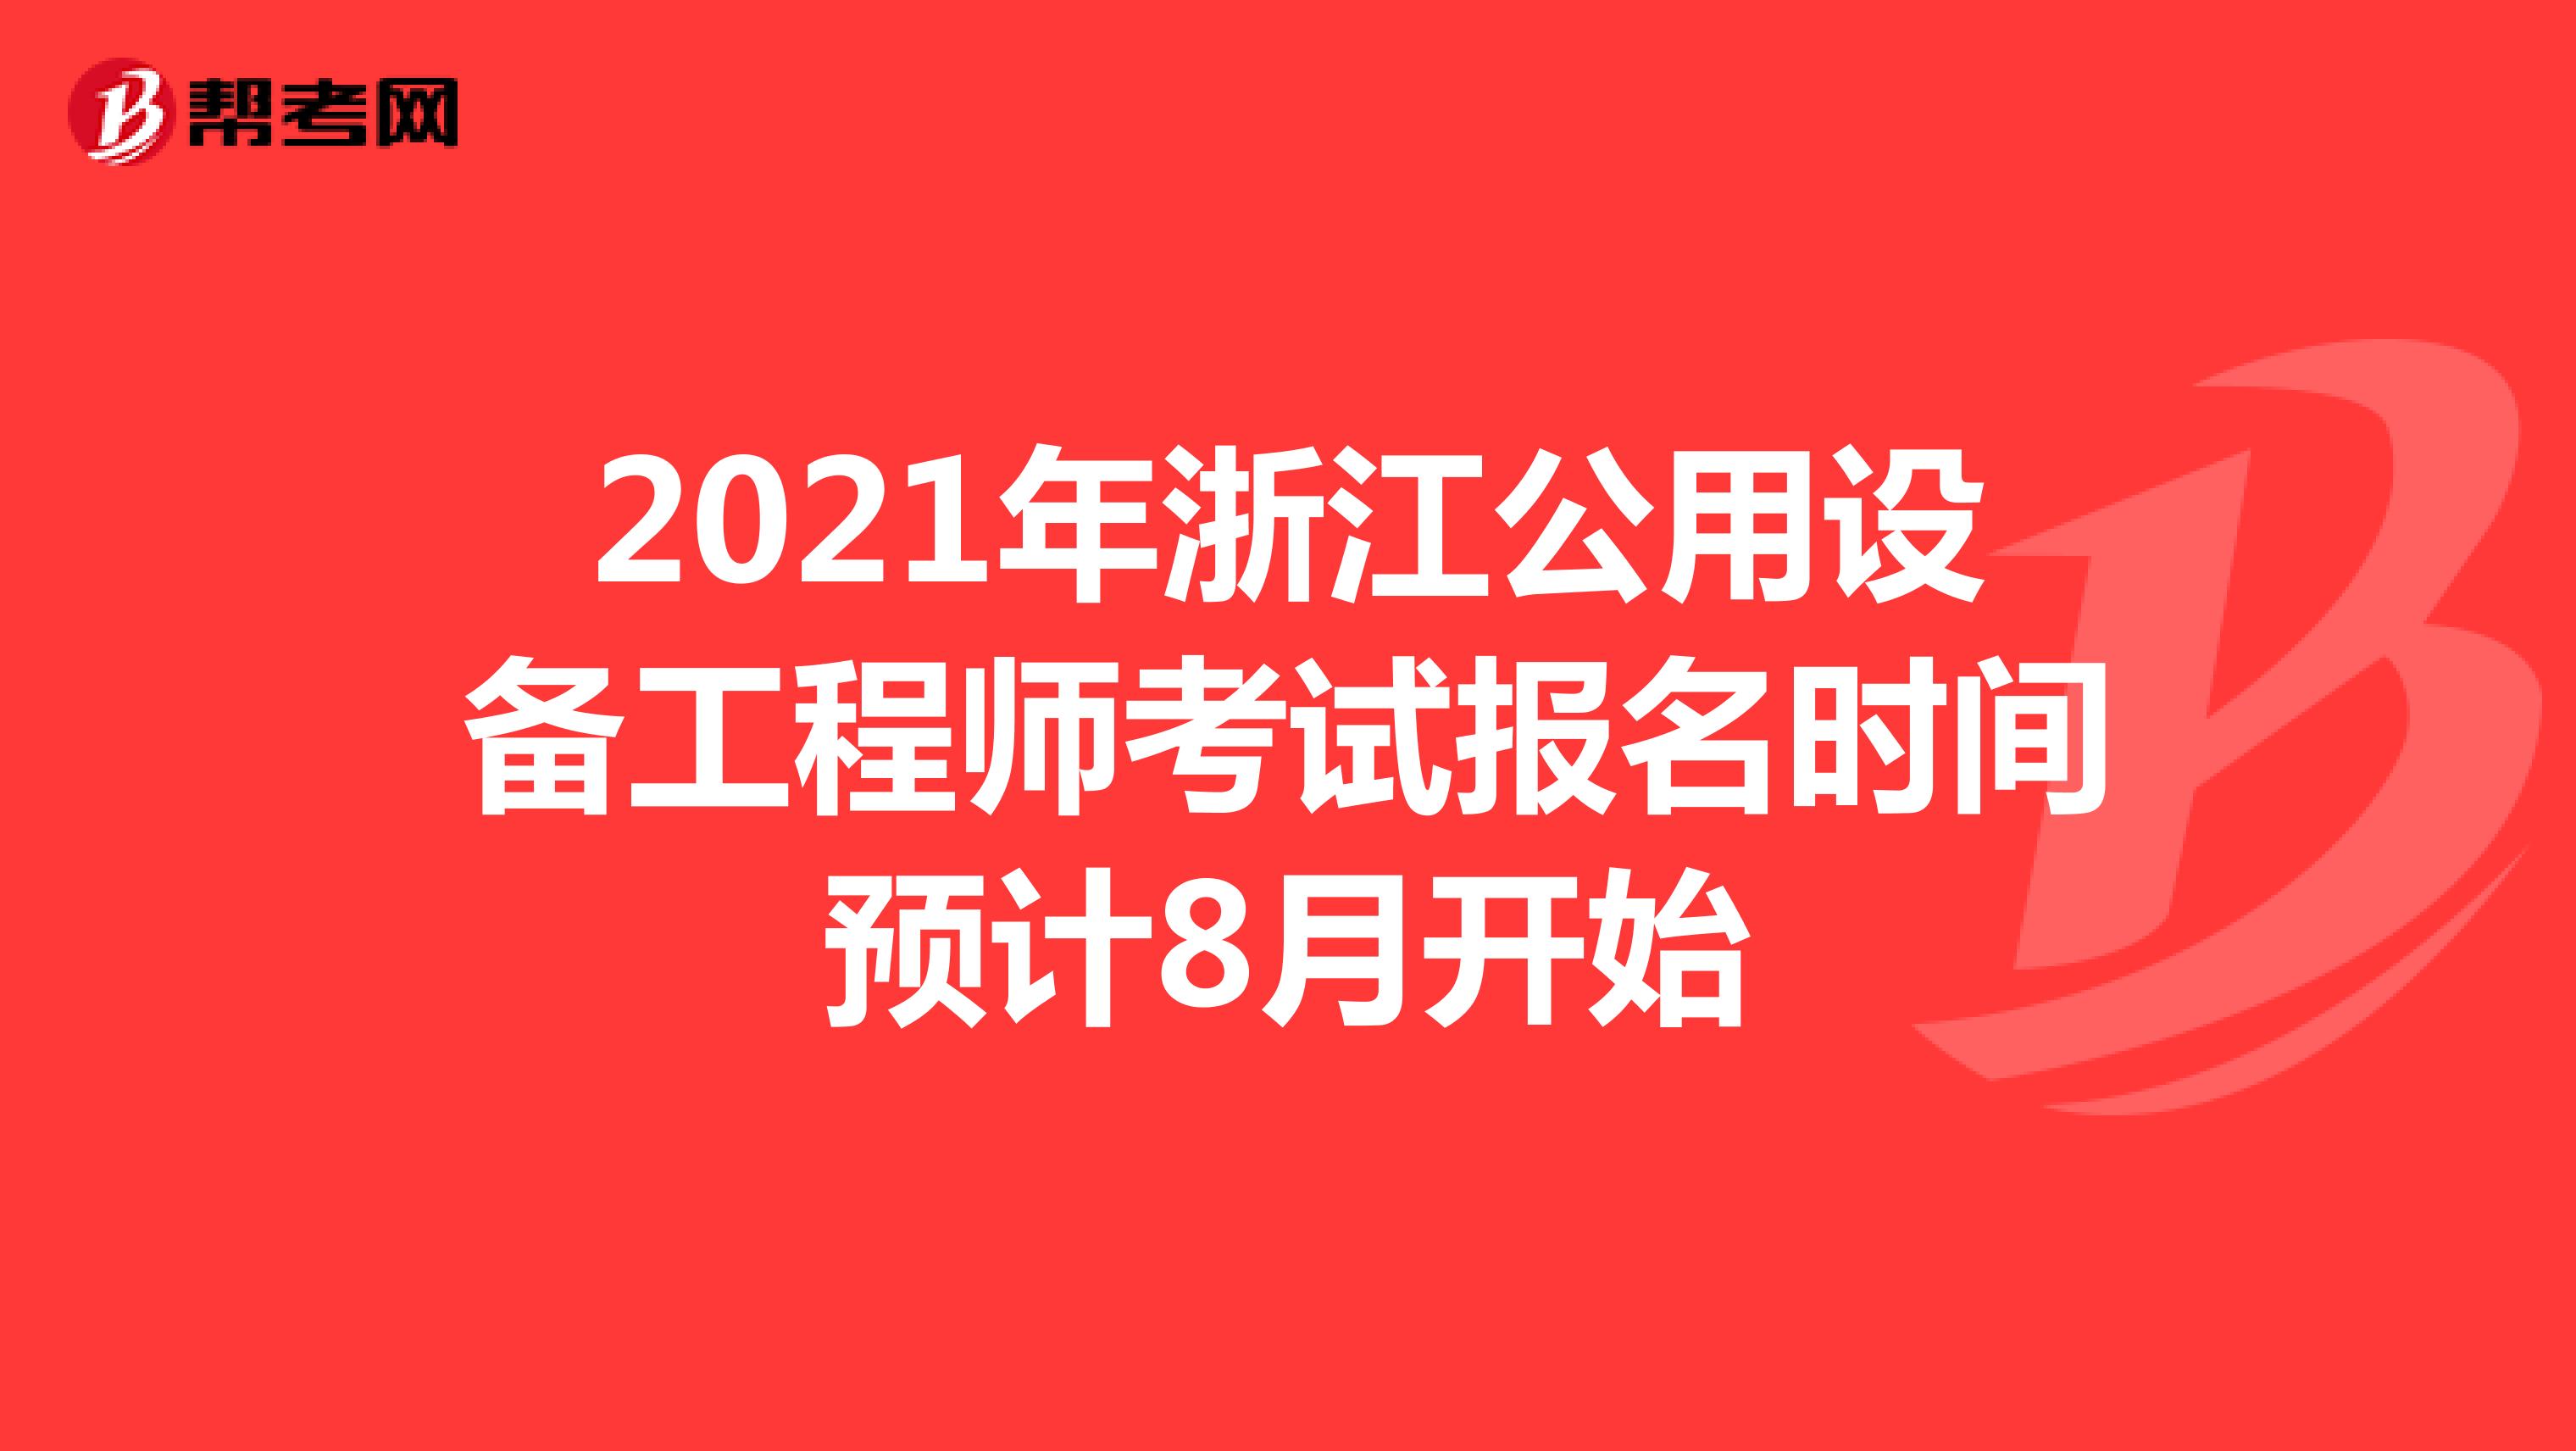 2021年浙江公用设备工程师考试报名时间预计8月开始